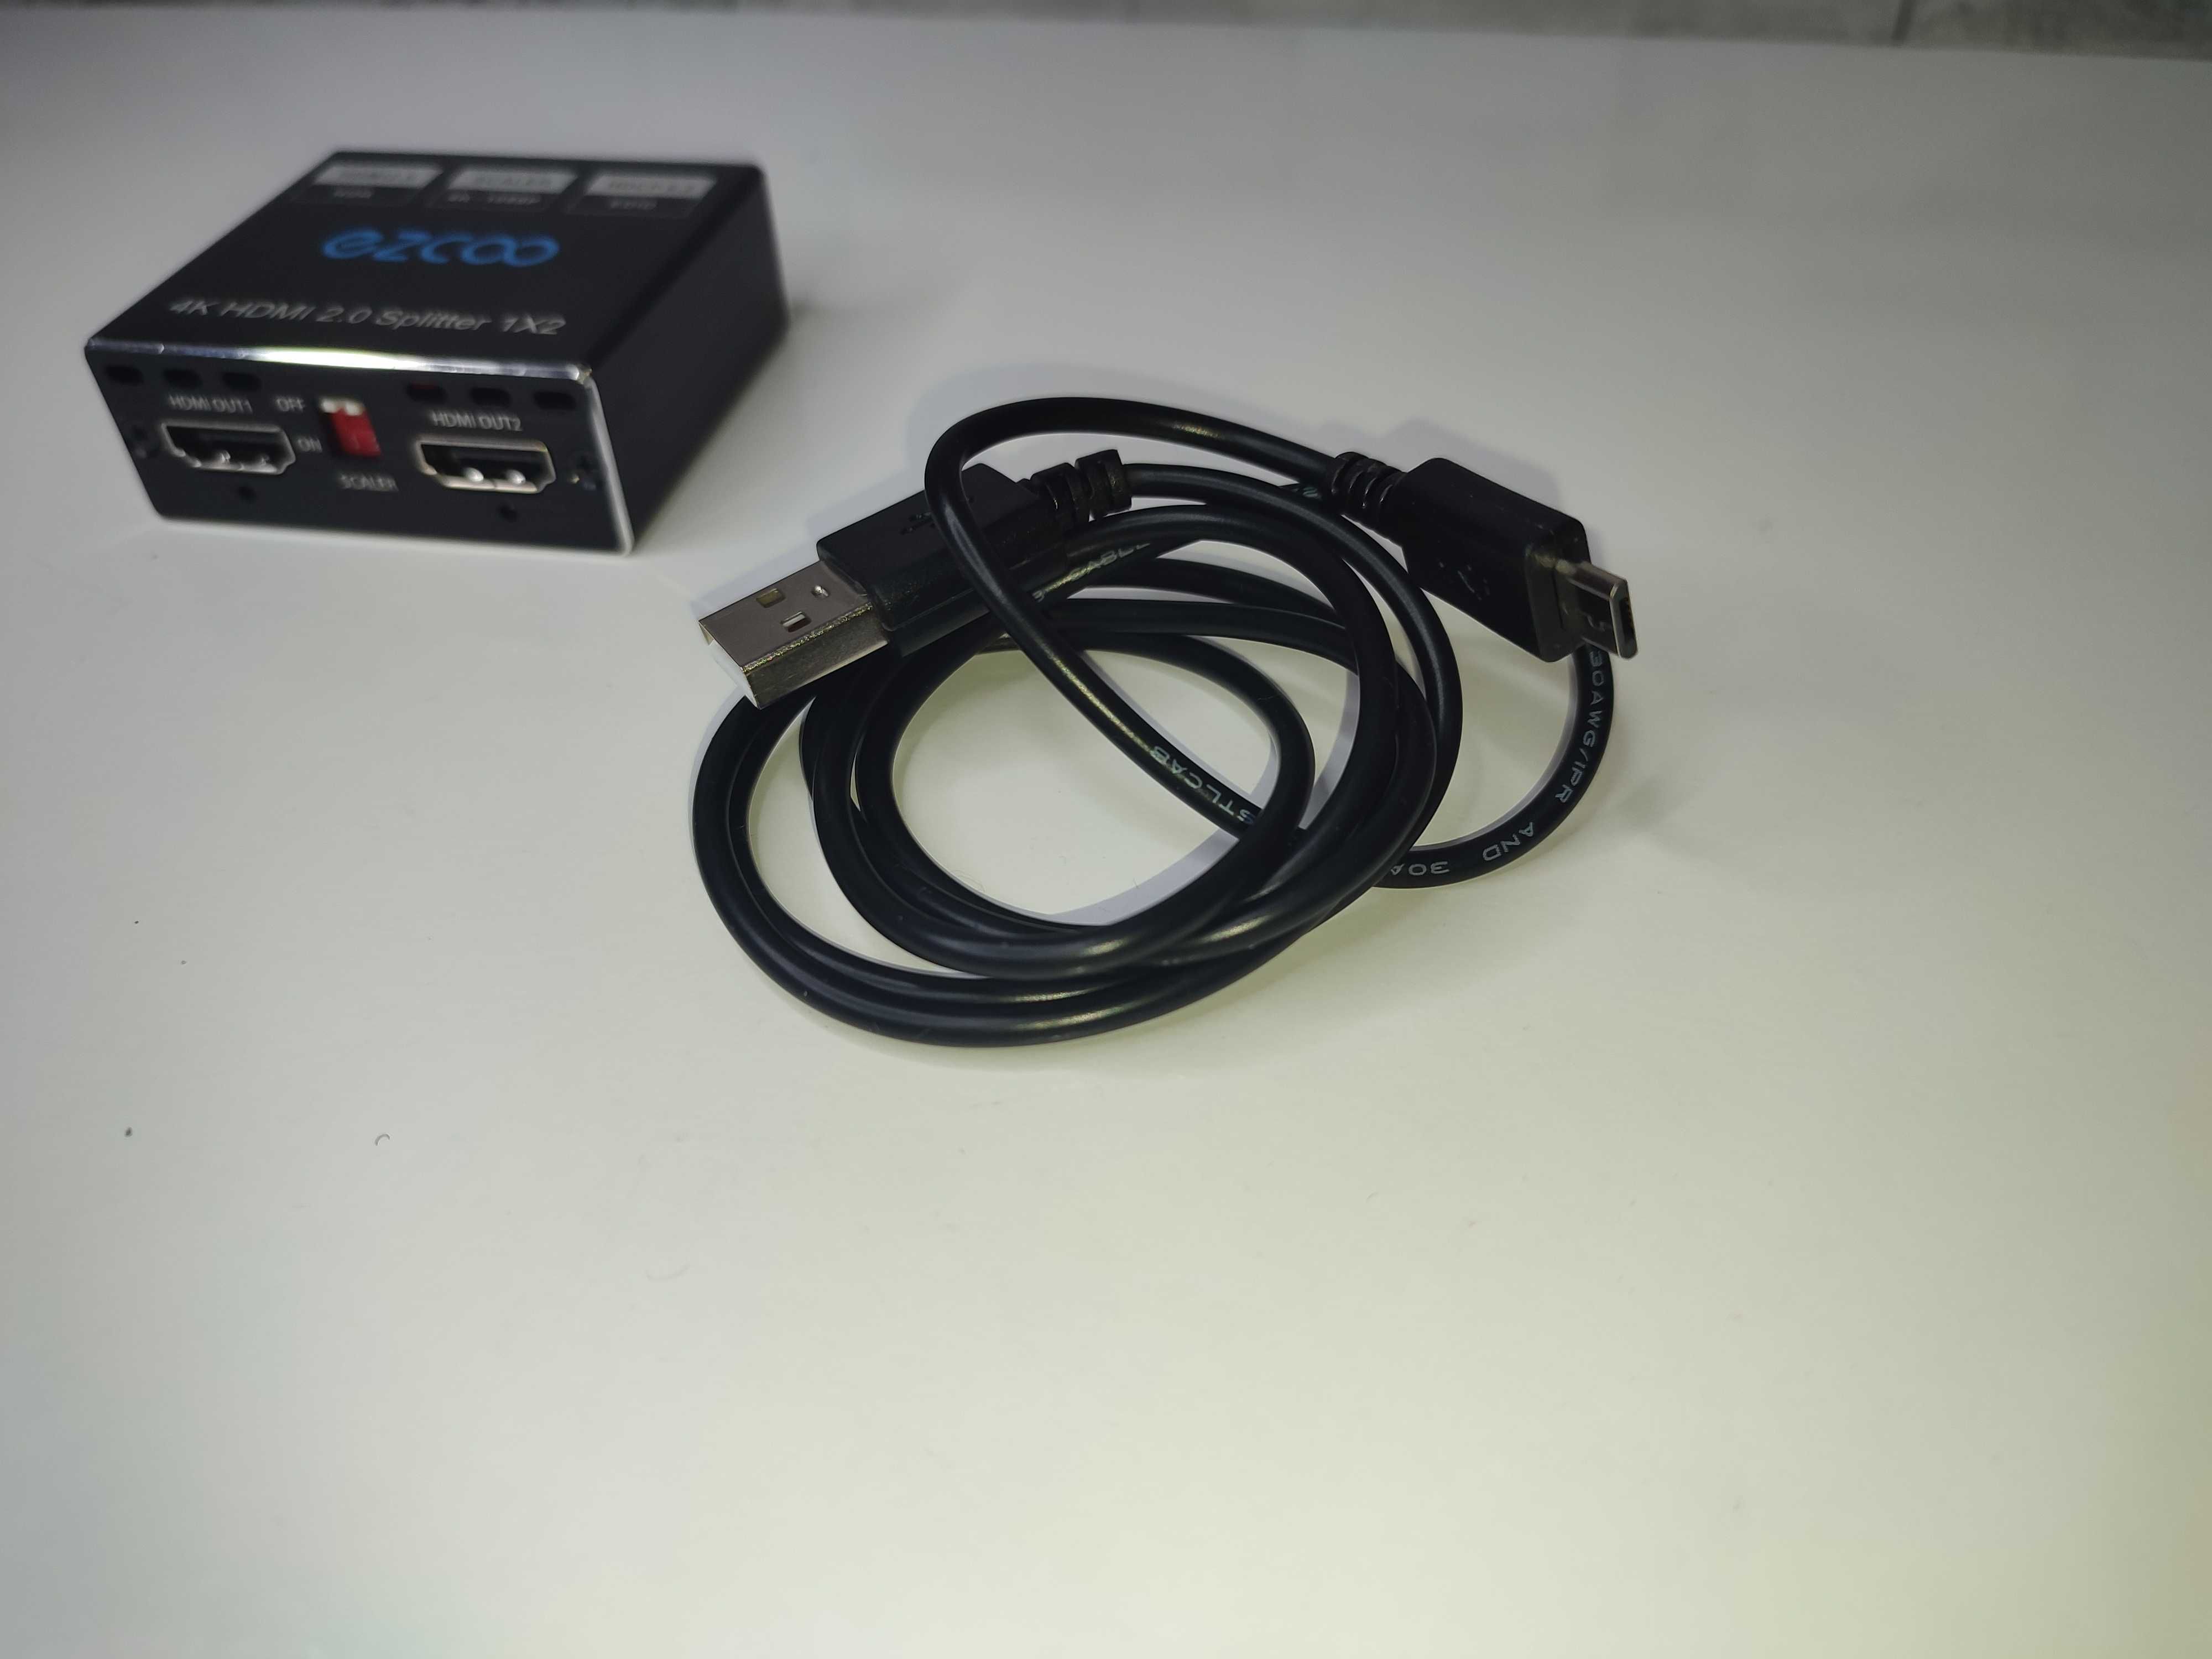 Ezcoo Spliter rozdzielacz sygnału HDMI